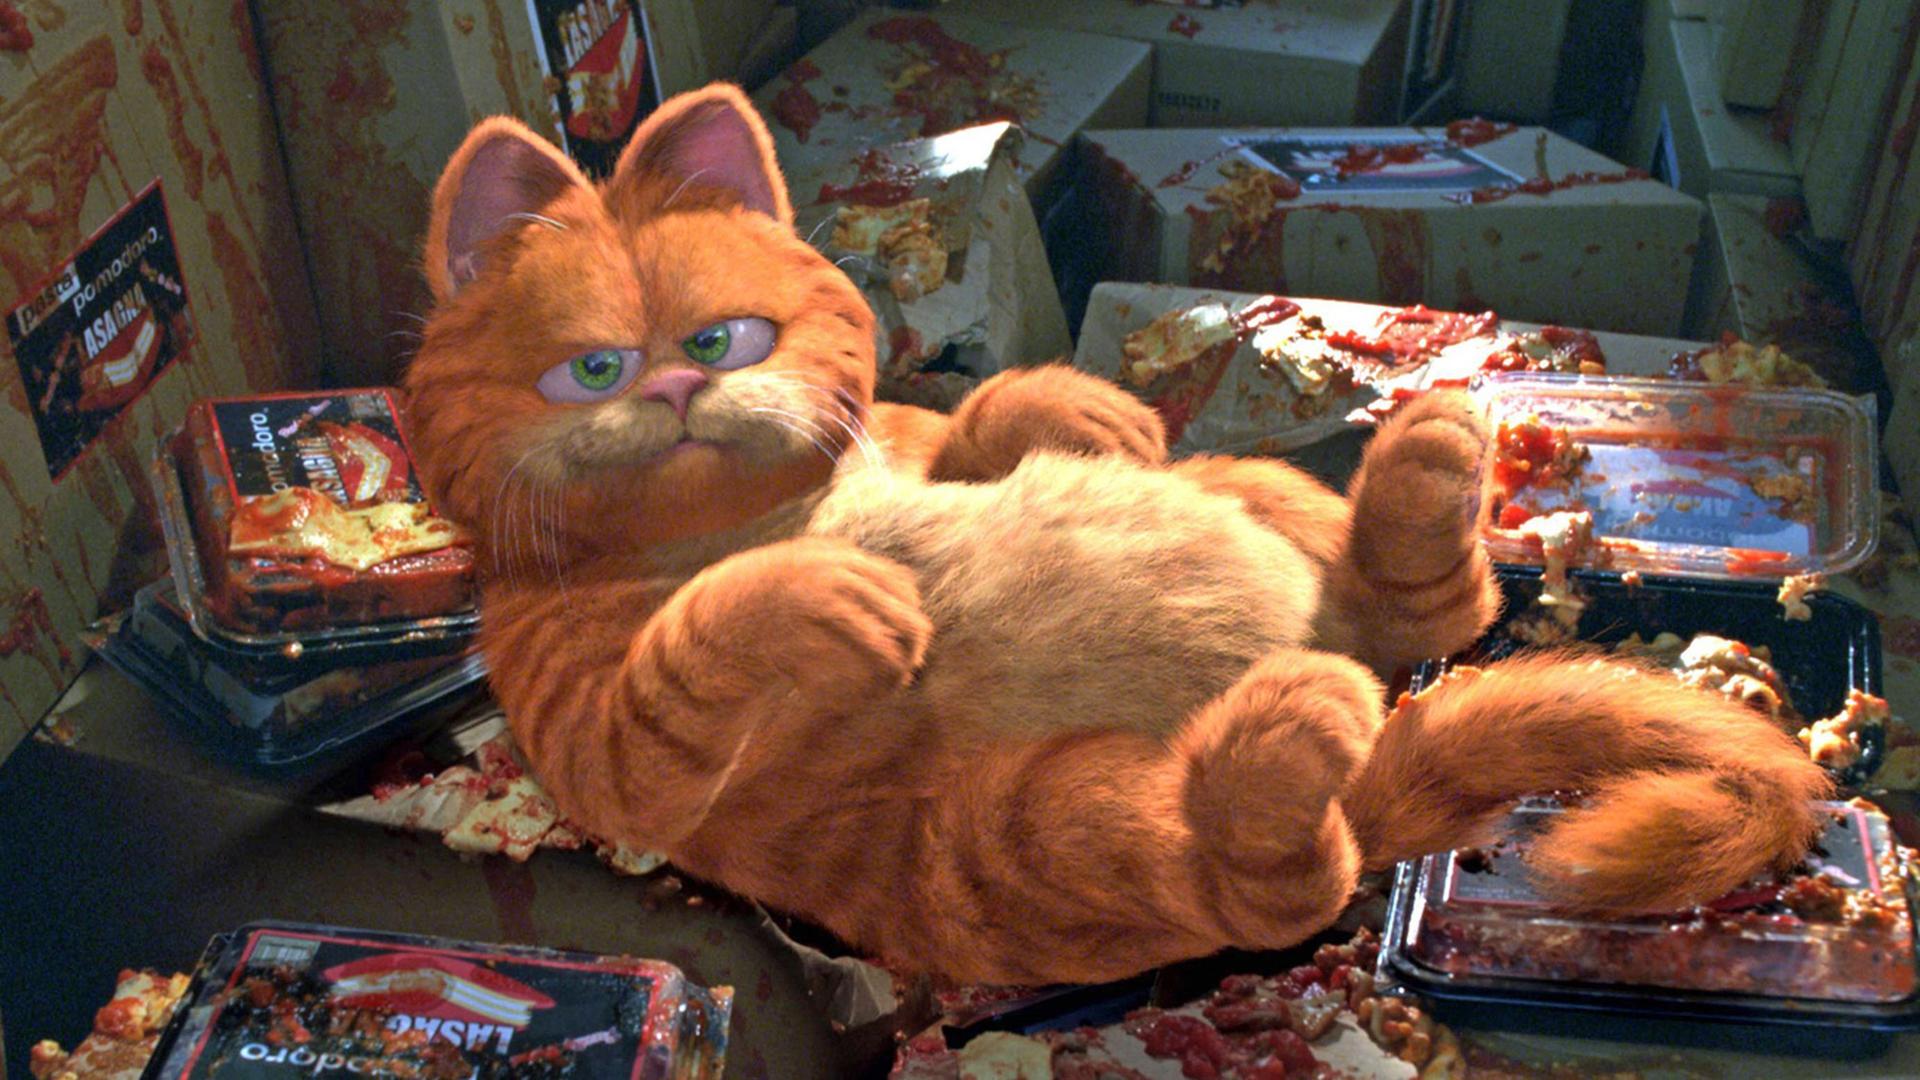 Satt und zufrieden: Kater Garfield liegt auf dem Rücken, umgeben von leeren Packungen Fertiglasagne.